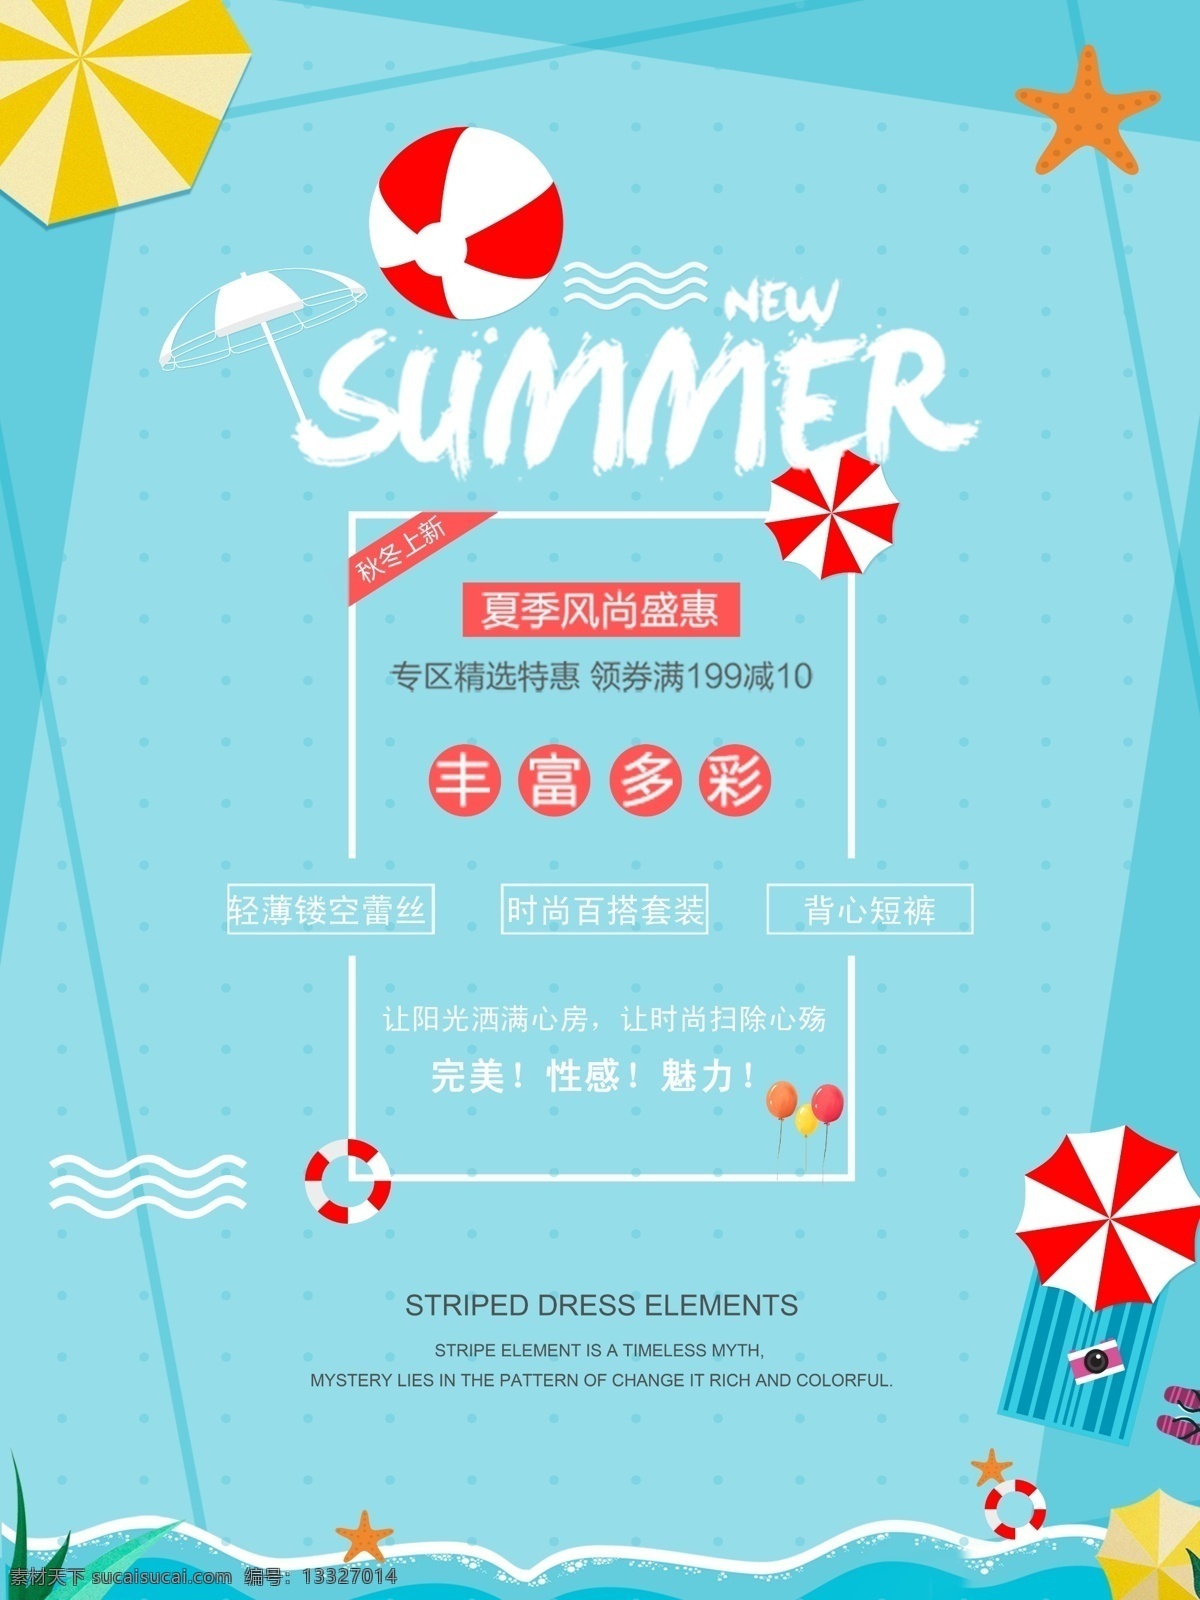 夏日 促销 海报 夏季 夏日促销 夏季换新 太阳伞 海星 服装促销 夏季促销 救生圈 新品上市 夏季新品 海边 海滩